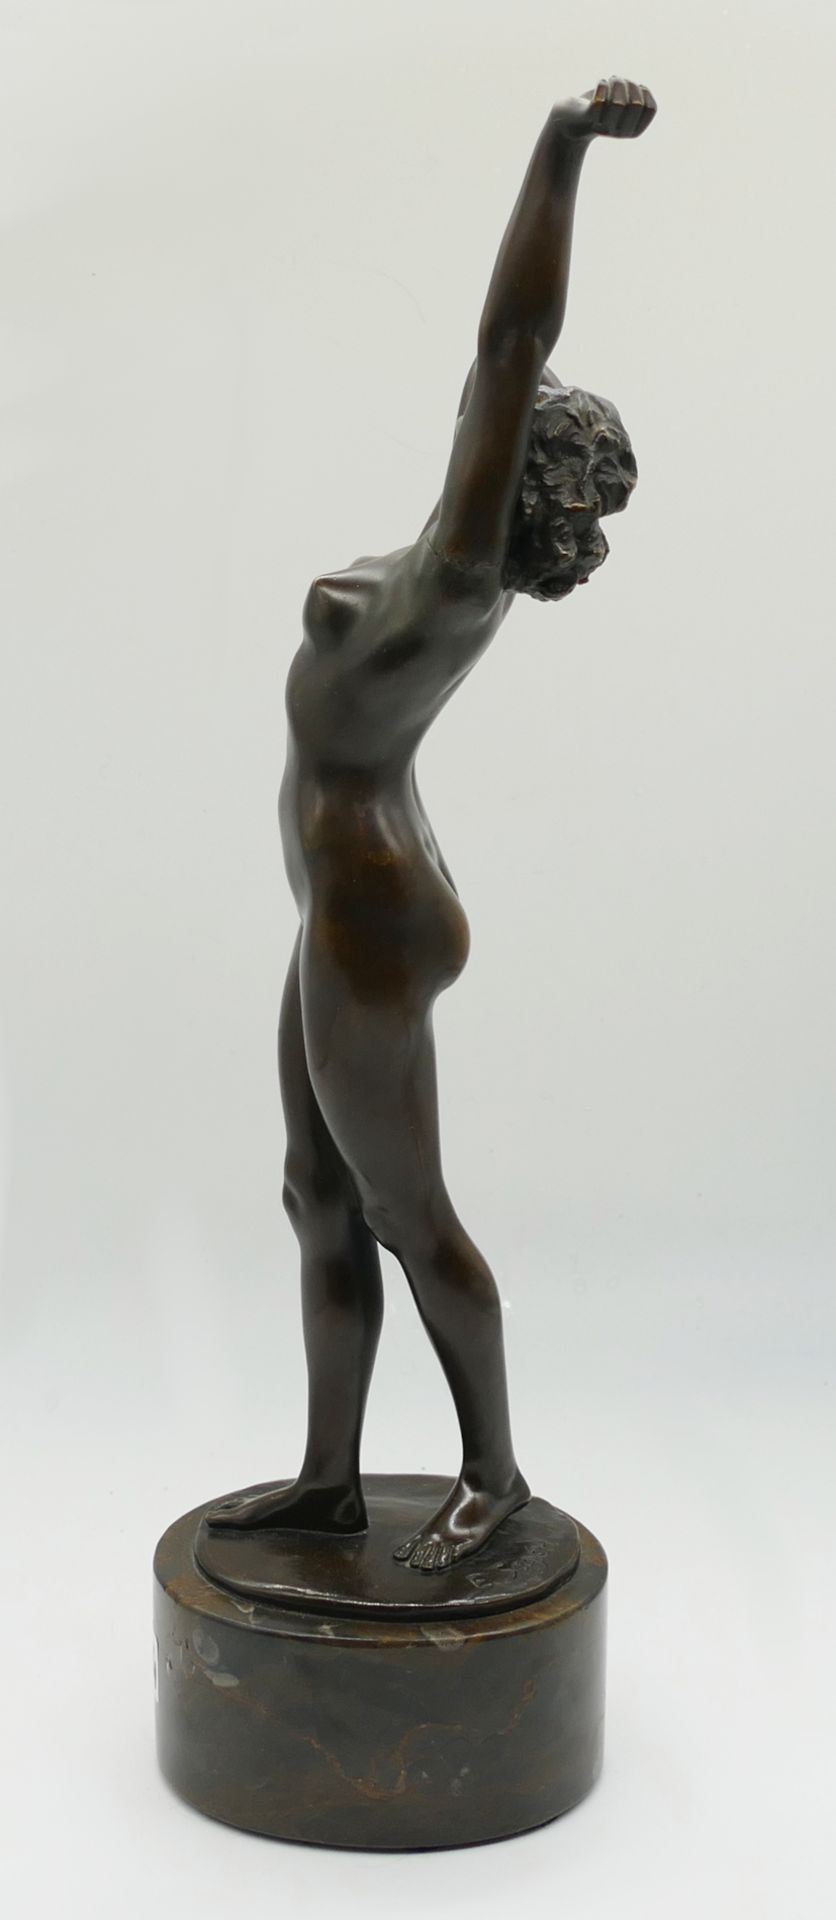 1 Bronzefigur auf Sockel bez. E. SEGER (wohl Ernst S. 1868 Neurode-1939 Berlin) "Erwachende" H mit S - Bild 4 aus 6